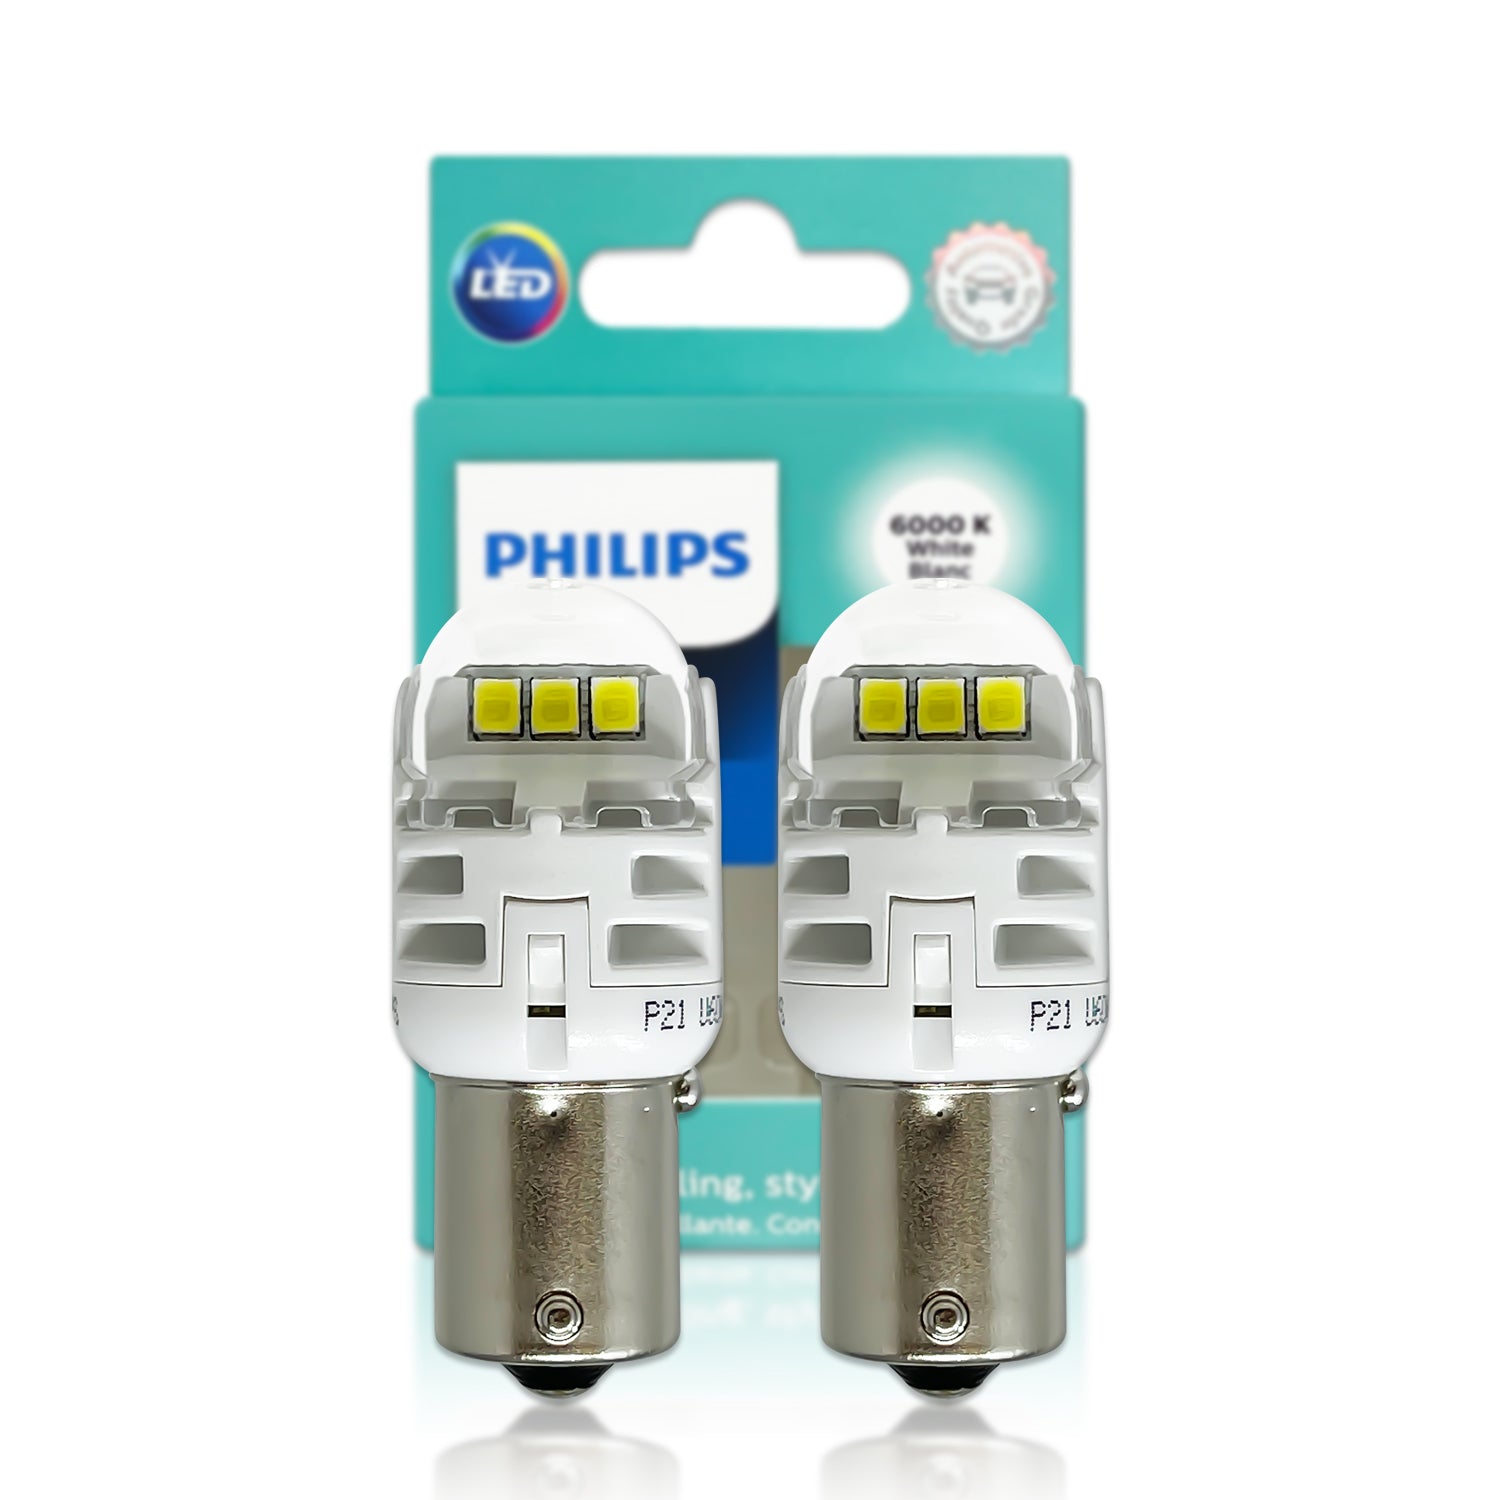 Philips dévoile sa lampe Ultinon interdite